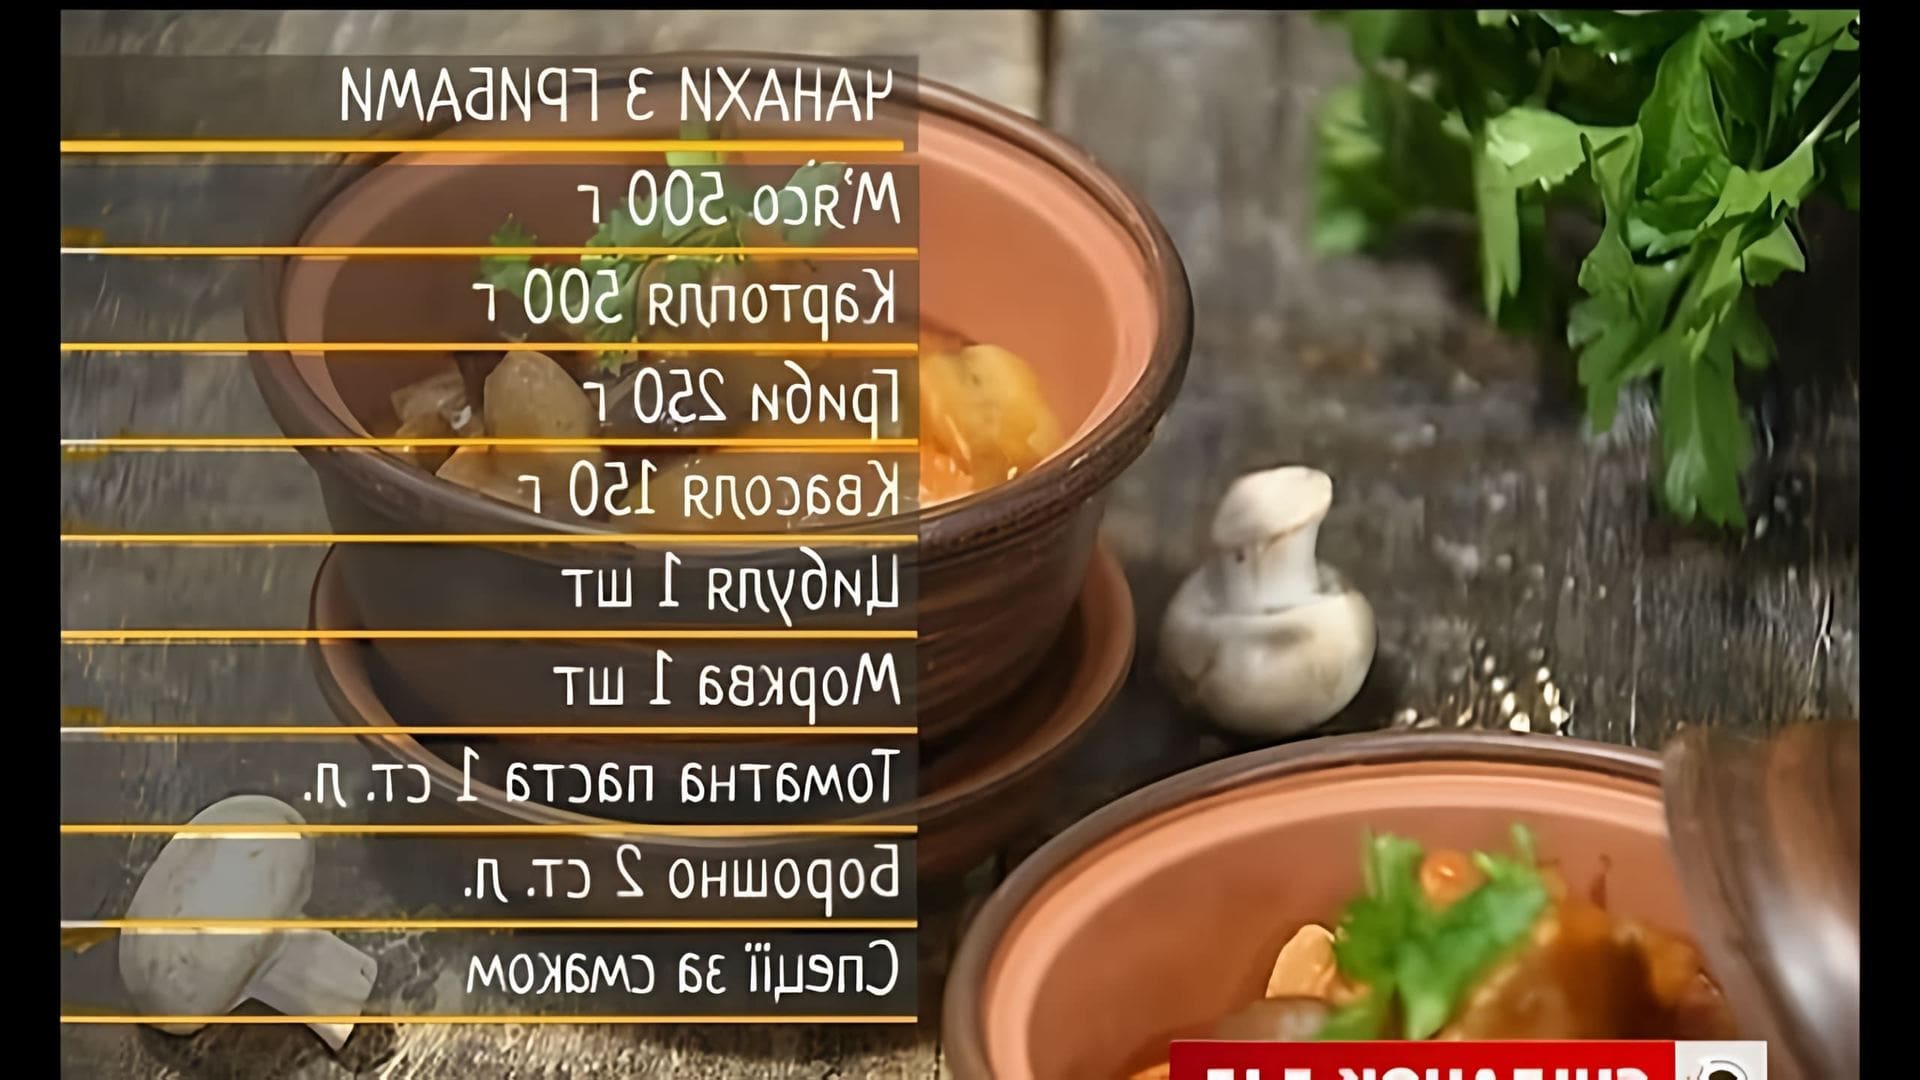 Сьогодні приготуємо неймовірну грузиньску страву, яка останнім часом стала популярною в Україні - чанахи з грибами. 